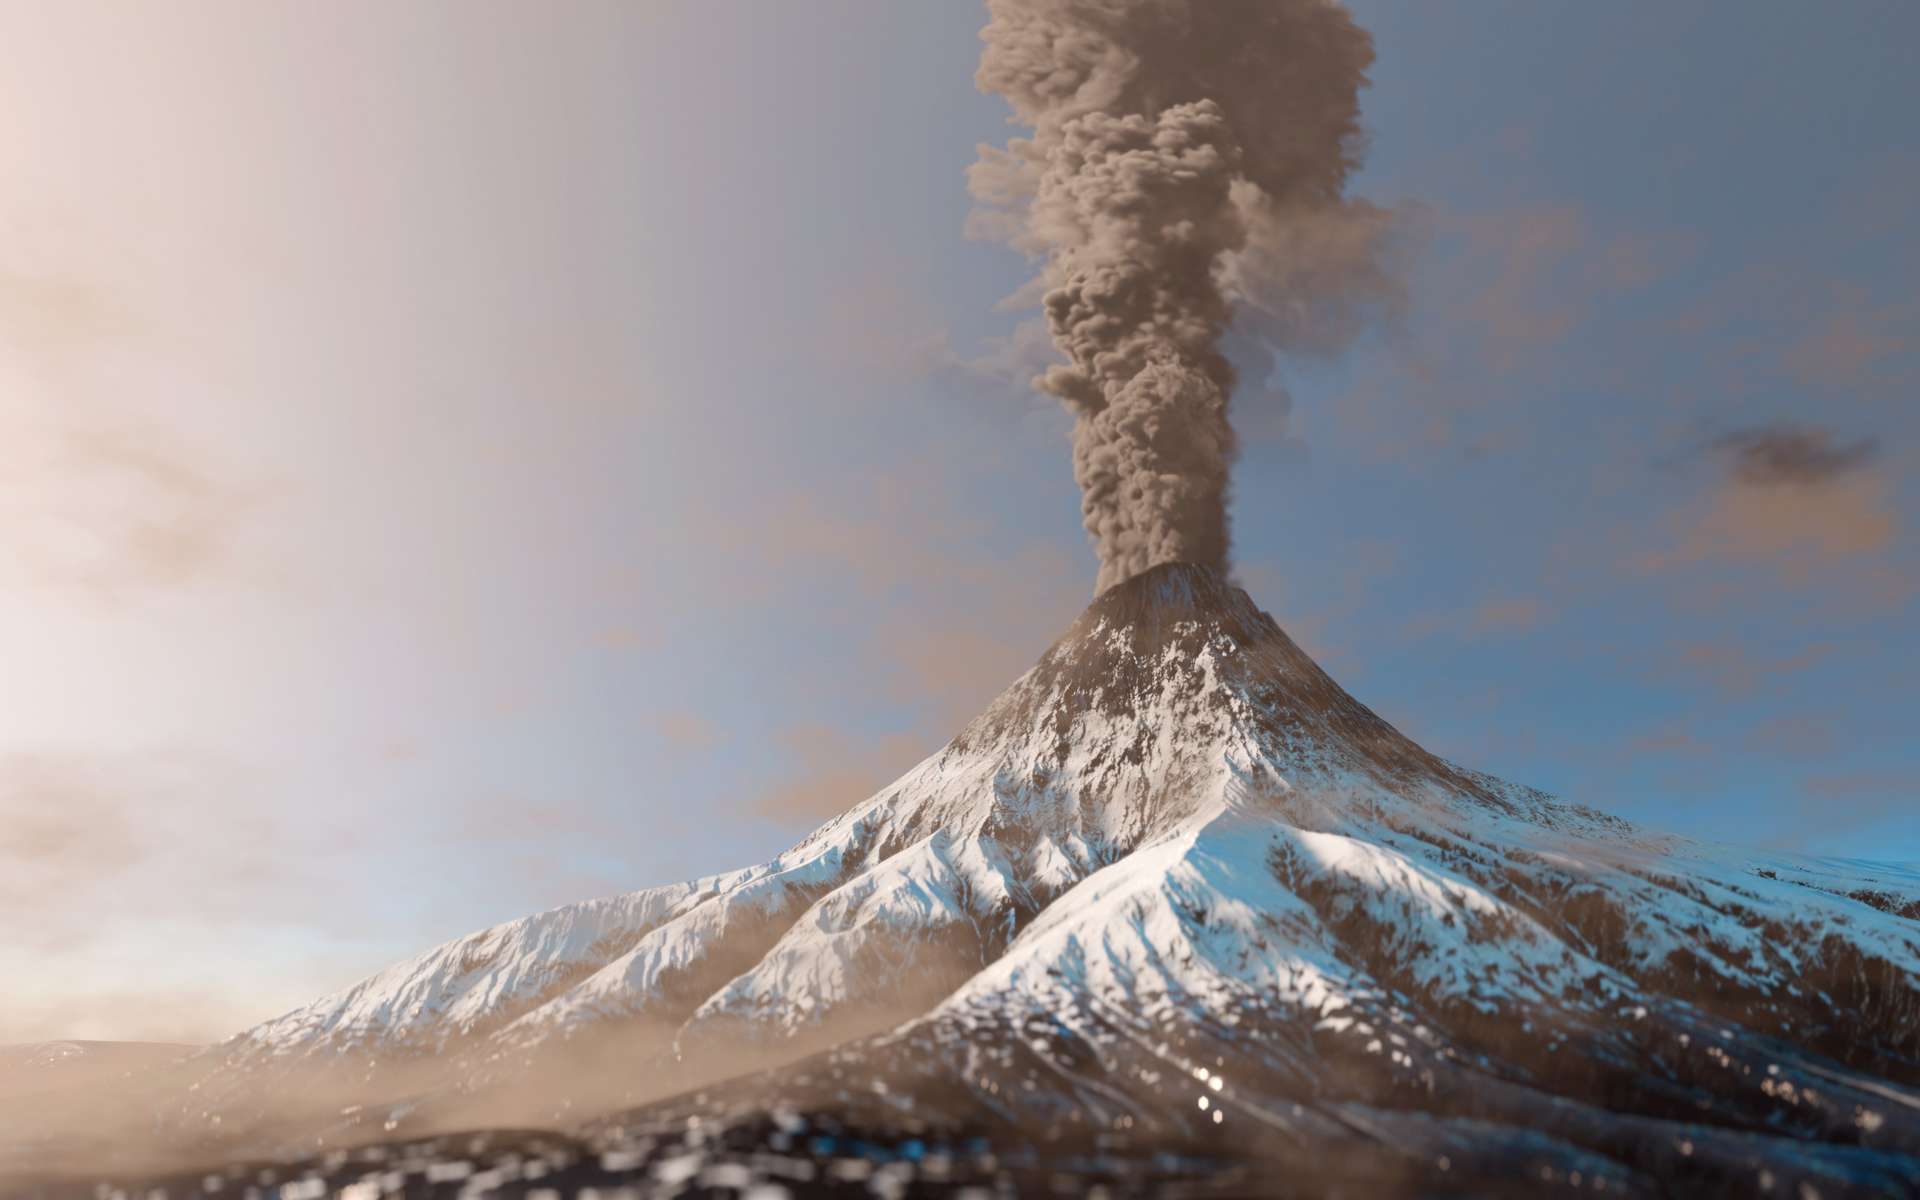 L'impact des volcans serait largement sous-estimé dans les projections climatiques actuelles